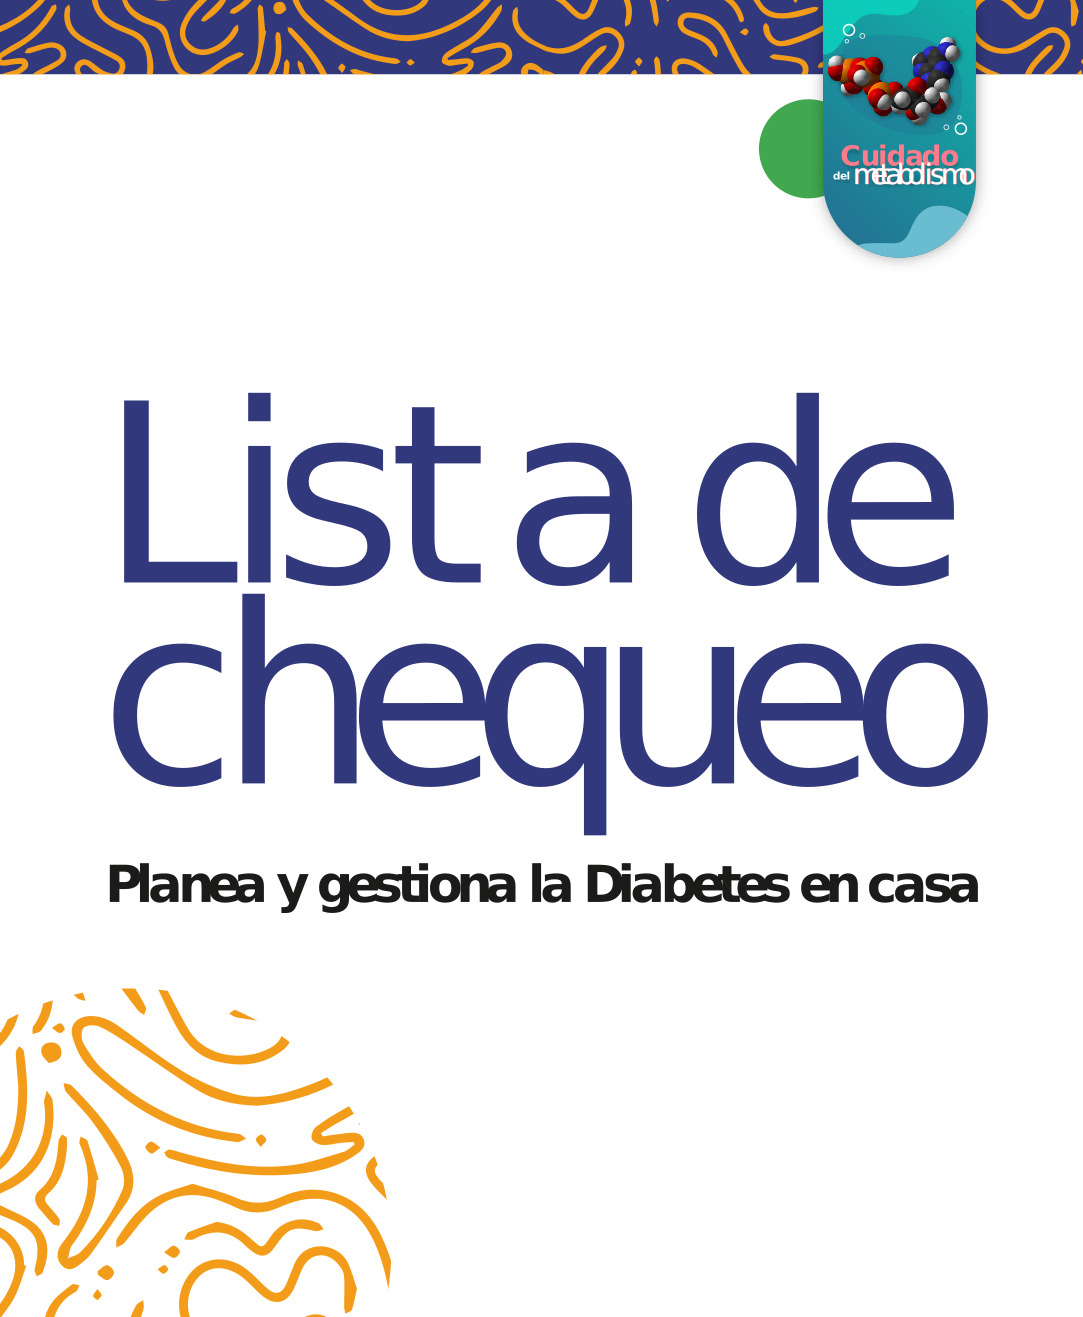 LISTA DE CHEQUEO: Planea y gestiona la Diabetes en casa